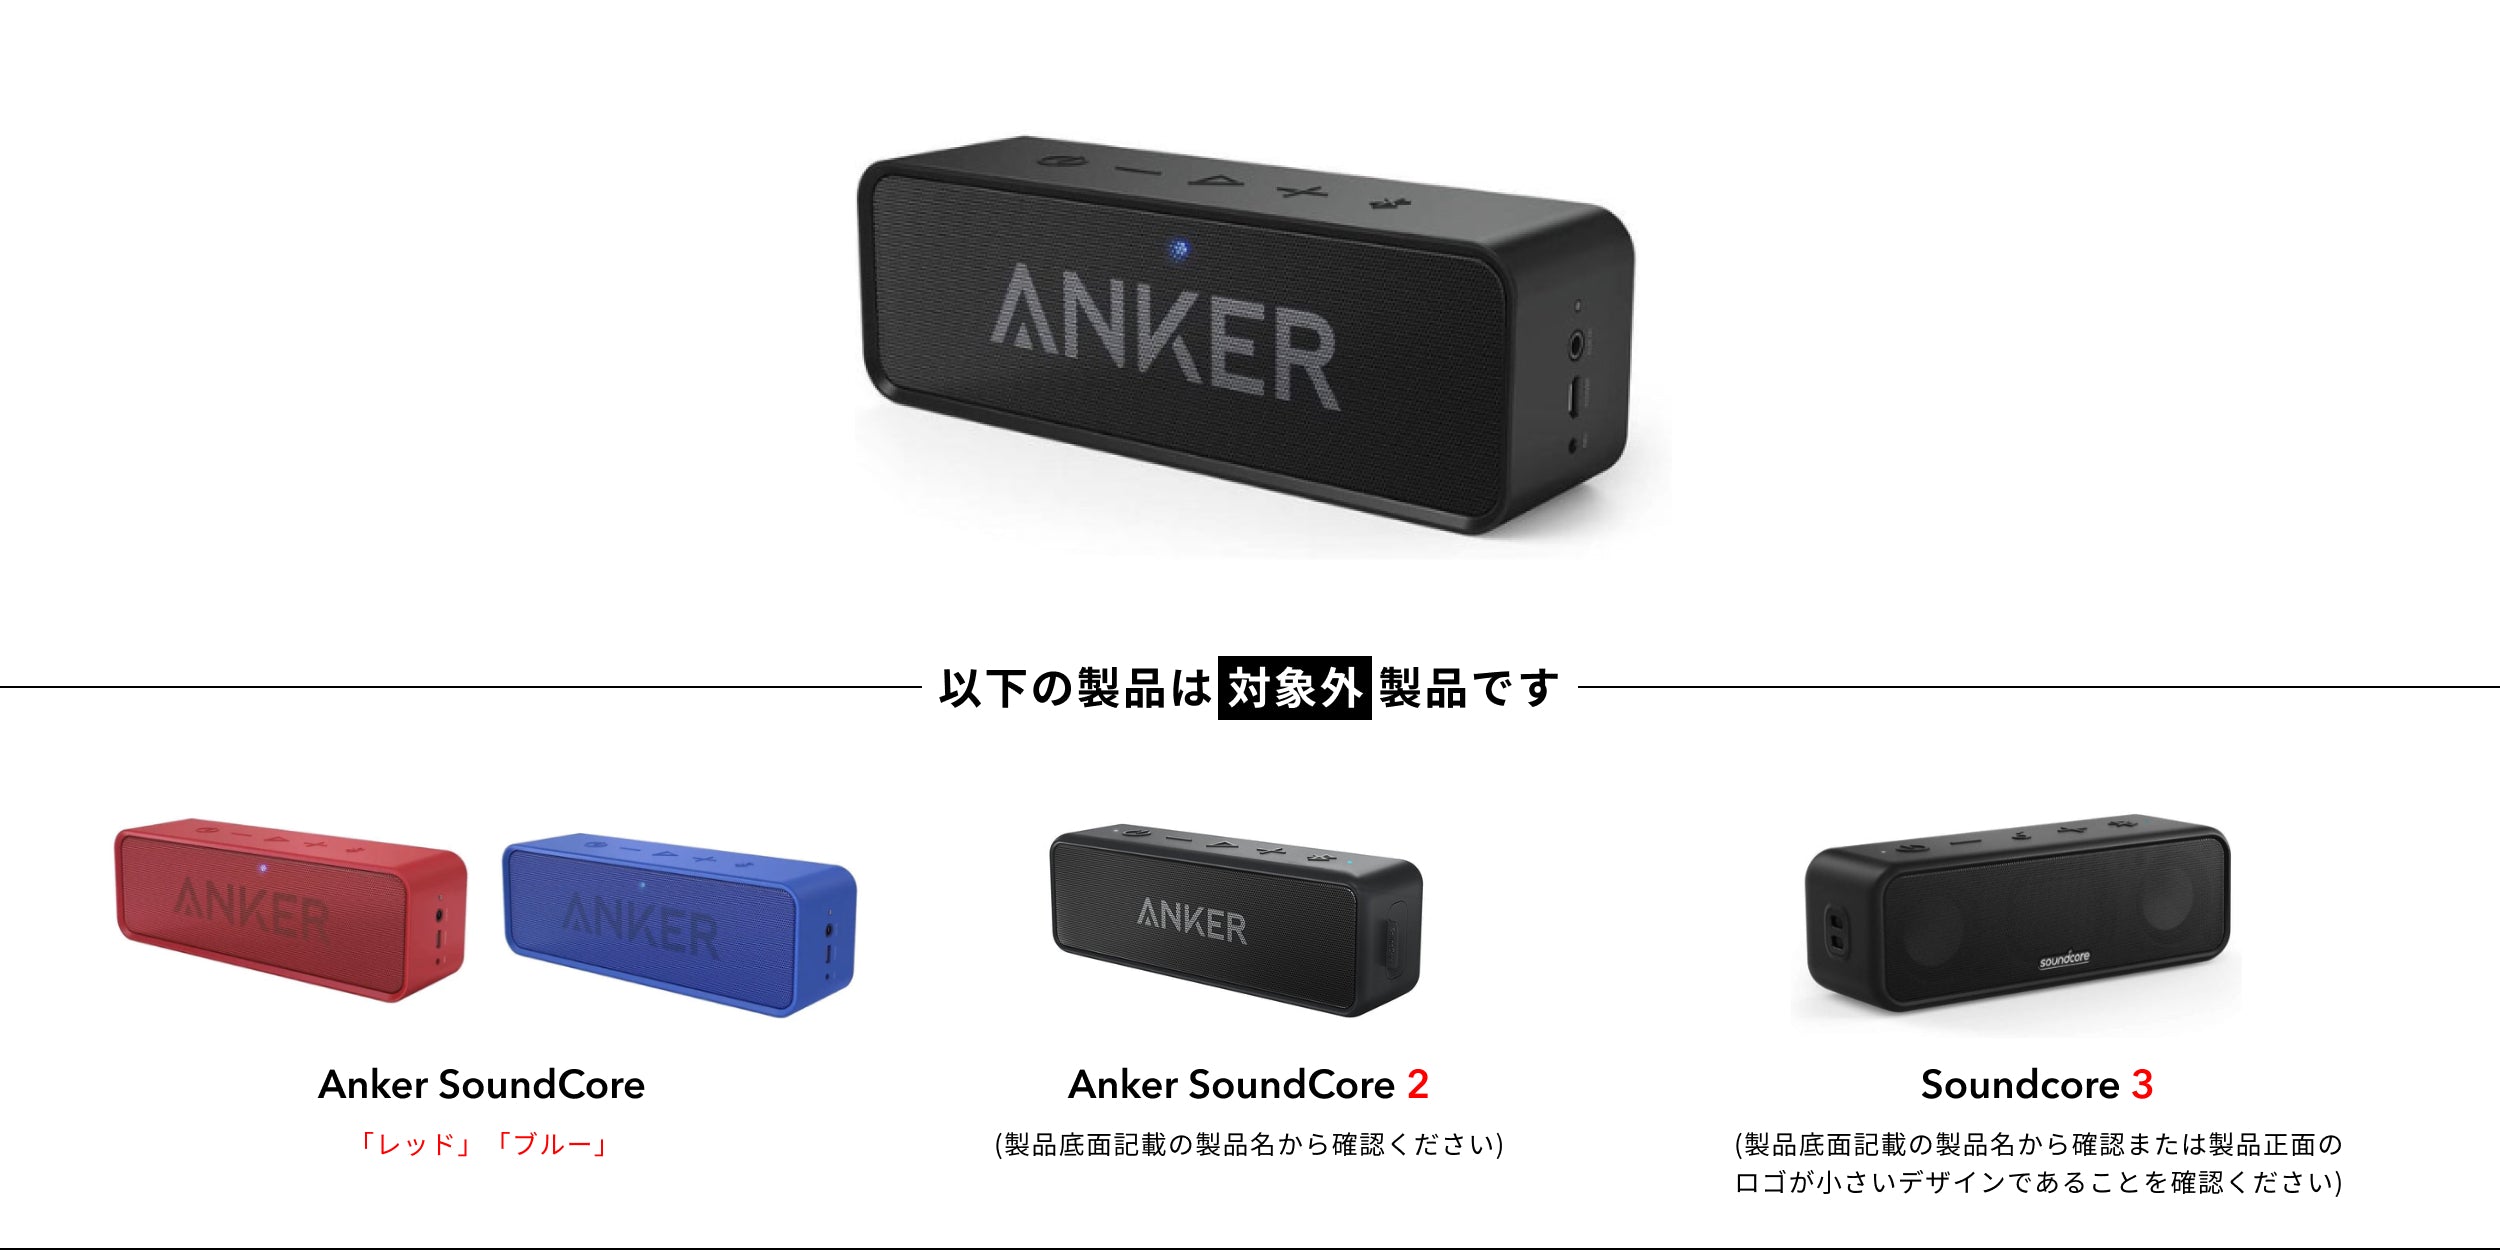 Anker SoundCore ブラック